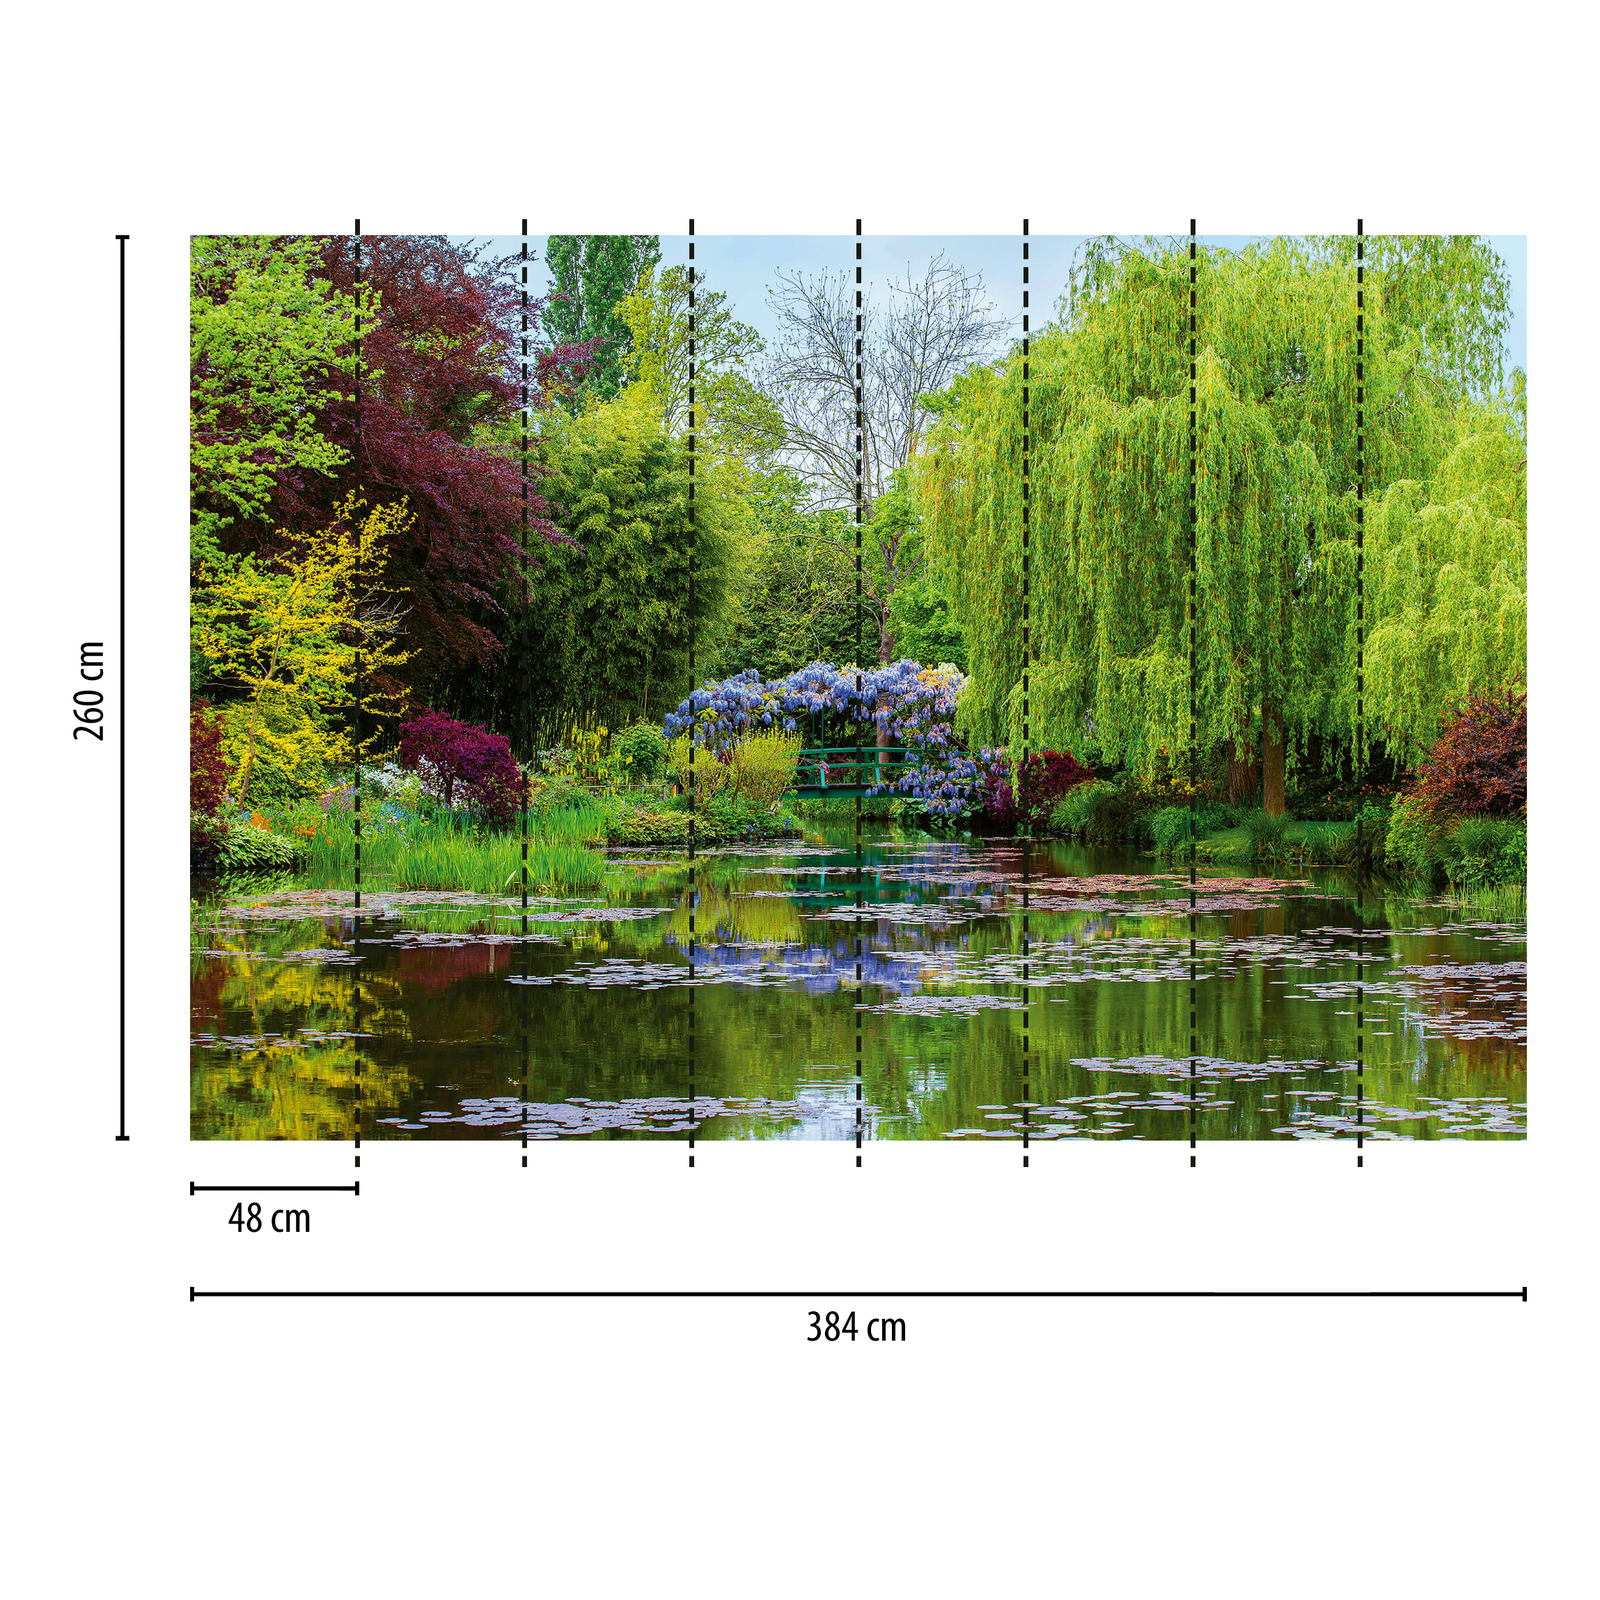             Fototapete Natur Garten mit See – Grün, Rot, Blau
        